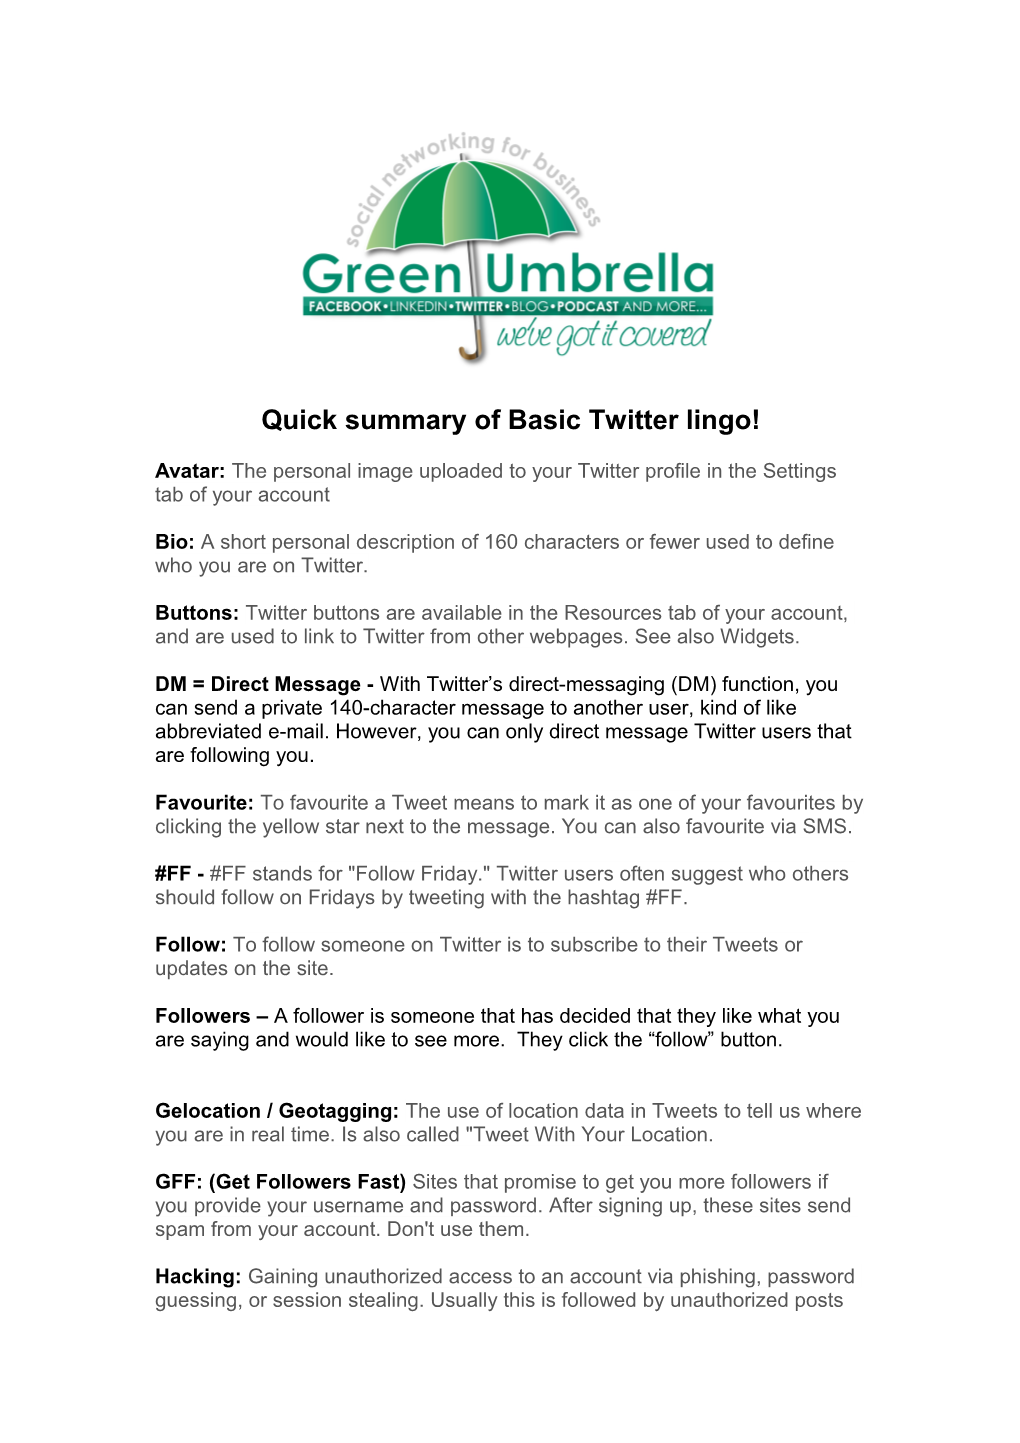 Quick Summary of Basic Twitter Lingo!